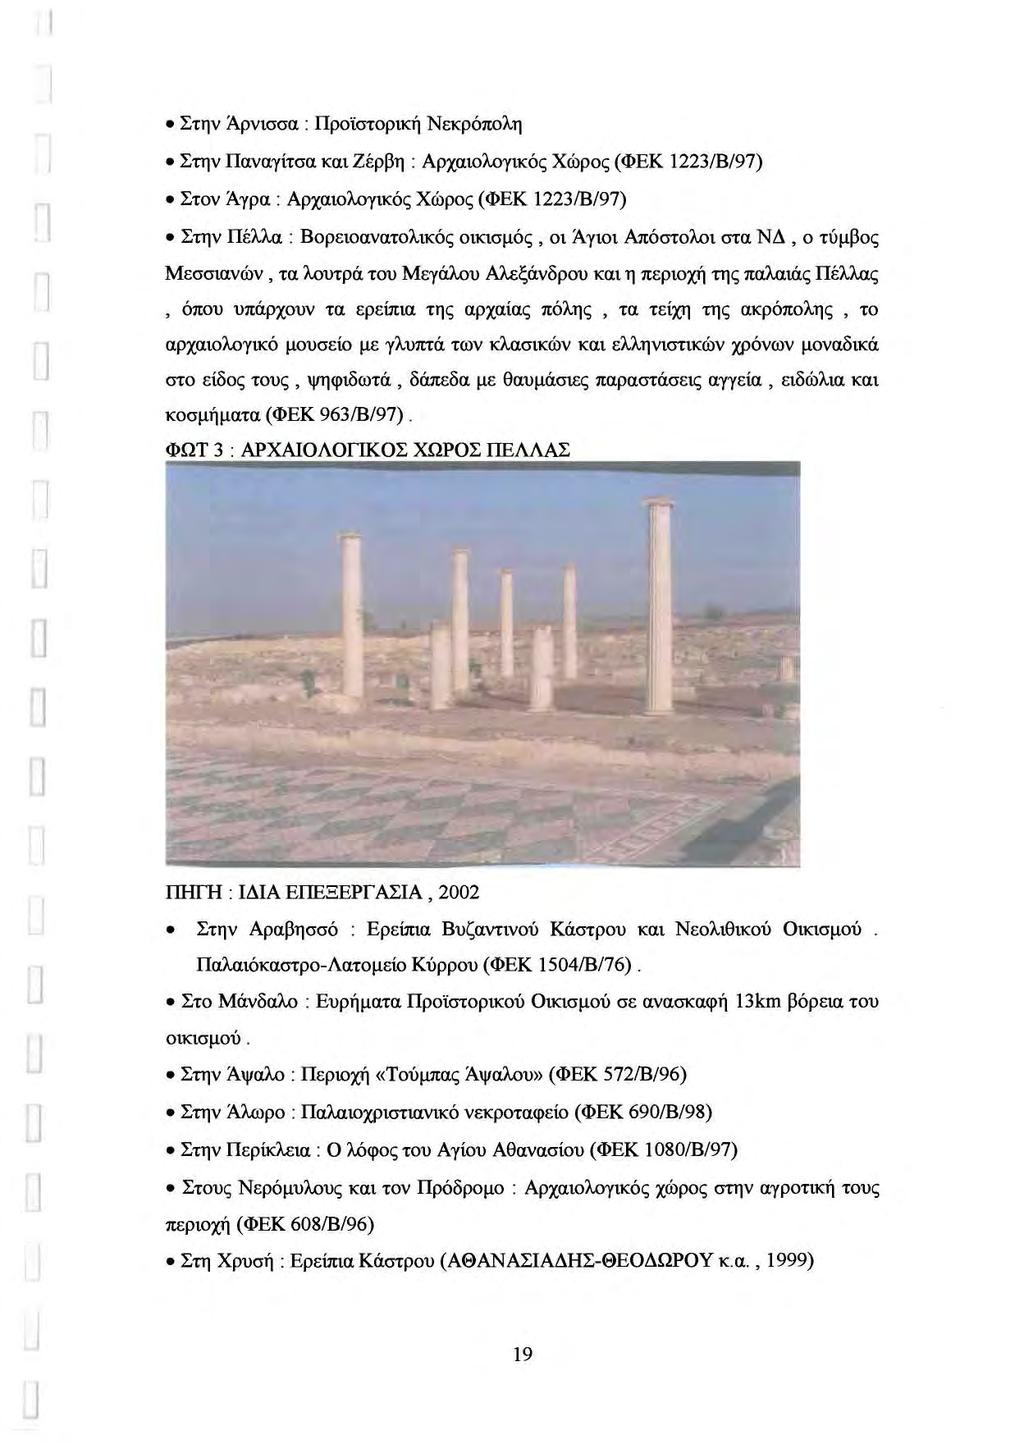 Στην Άρνισσα : Προϊστορική Νεκρόπολη Στην Παναγίτσα και έρβη : Αρχαιολογικός Χώρος (ΦΕΚ 223/8/97) Στον Άγρα: Αρχαιολογικός Χώρος (ΦΕΚ 223/8/97) Στην Πέλλα : Βορειοανατολικός ΟΊασμός, οι Άγιοι